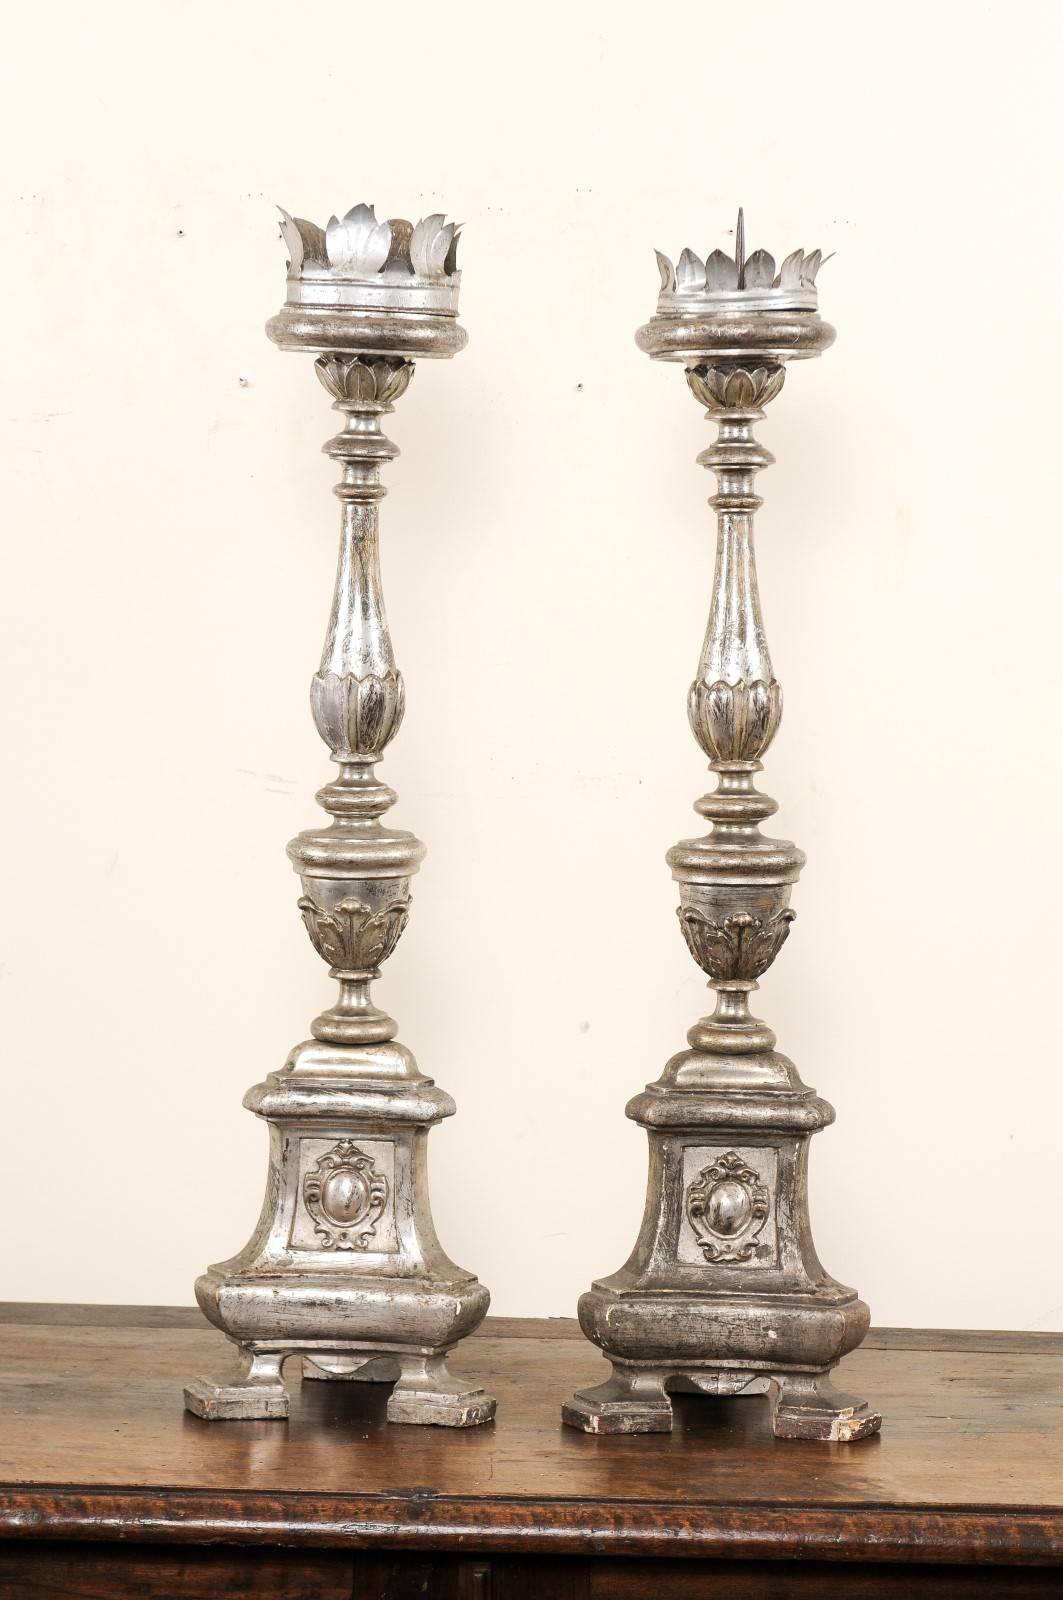 Une paire de chandeliers italiens de grande taille du XIXe siècle. Cette paire de chandeliers antiques, datant d'environ 1850, était à l'origine exposée dans une église italienne et présente une dorure argentée sur des corps en bois exquis sculptés